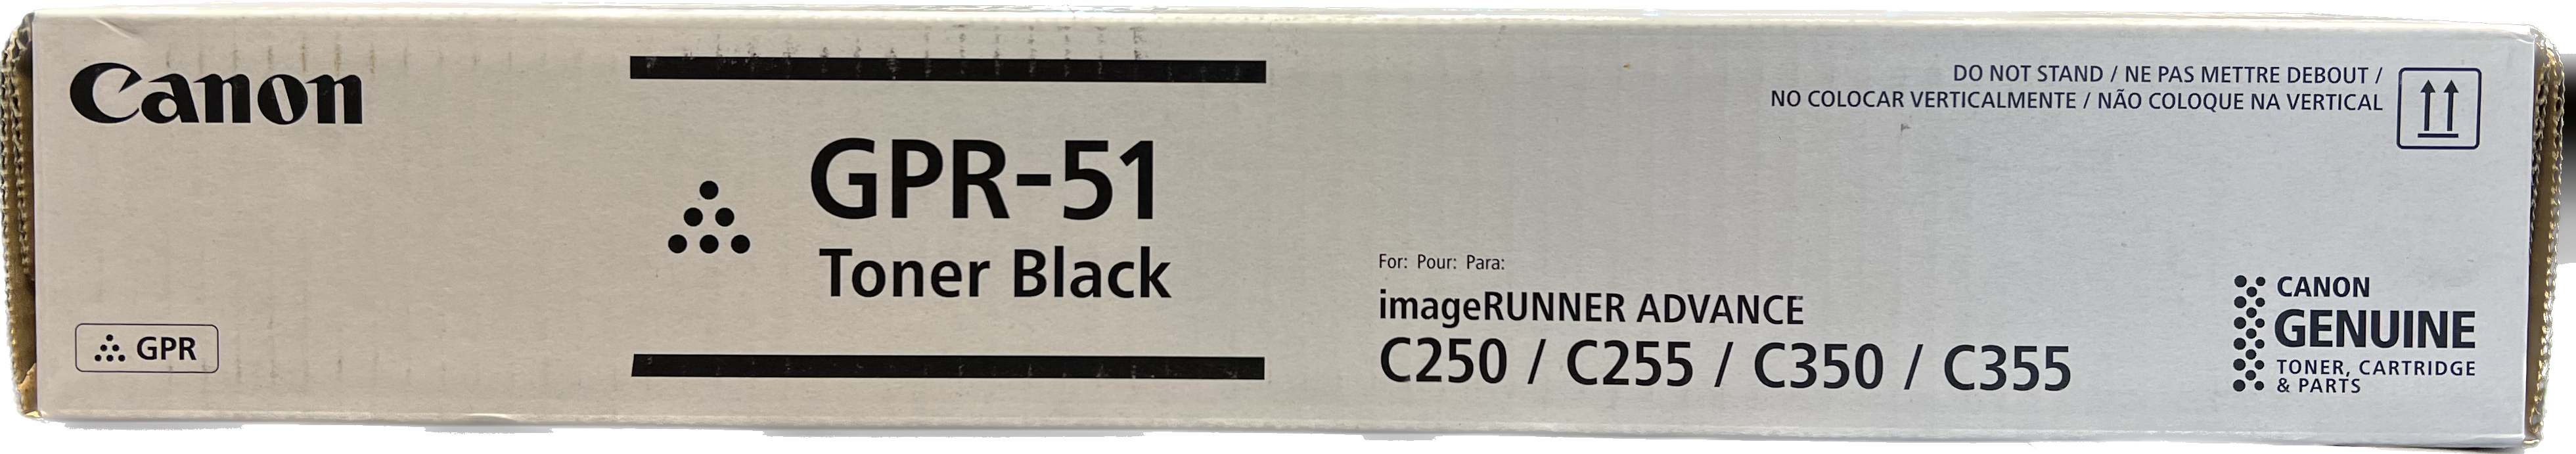 Genuine Canon Black Toner Cartridge | 8516B003 | GPR-51K